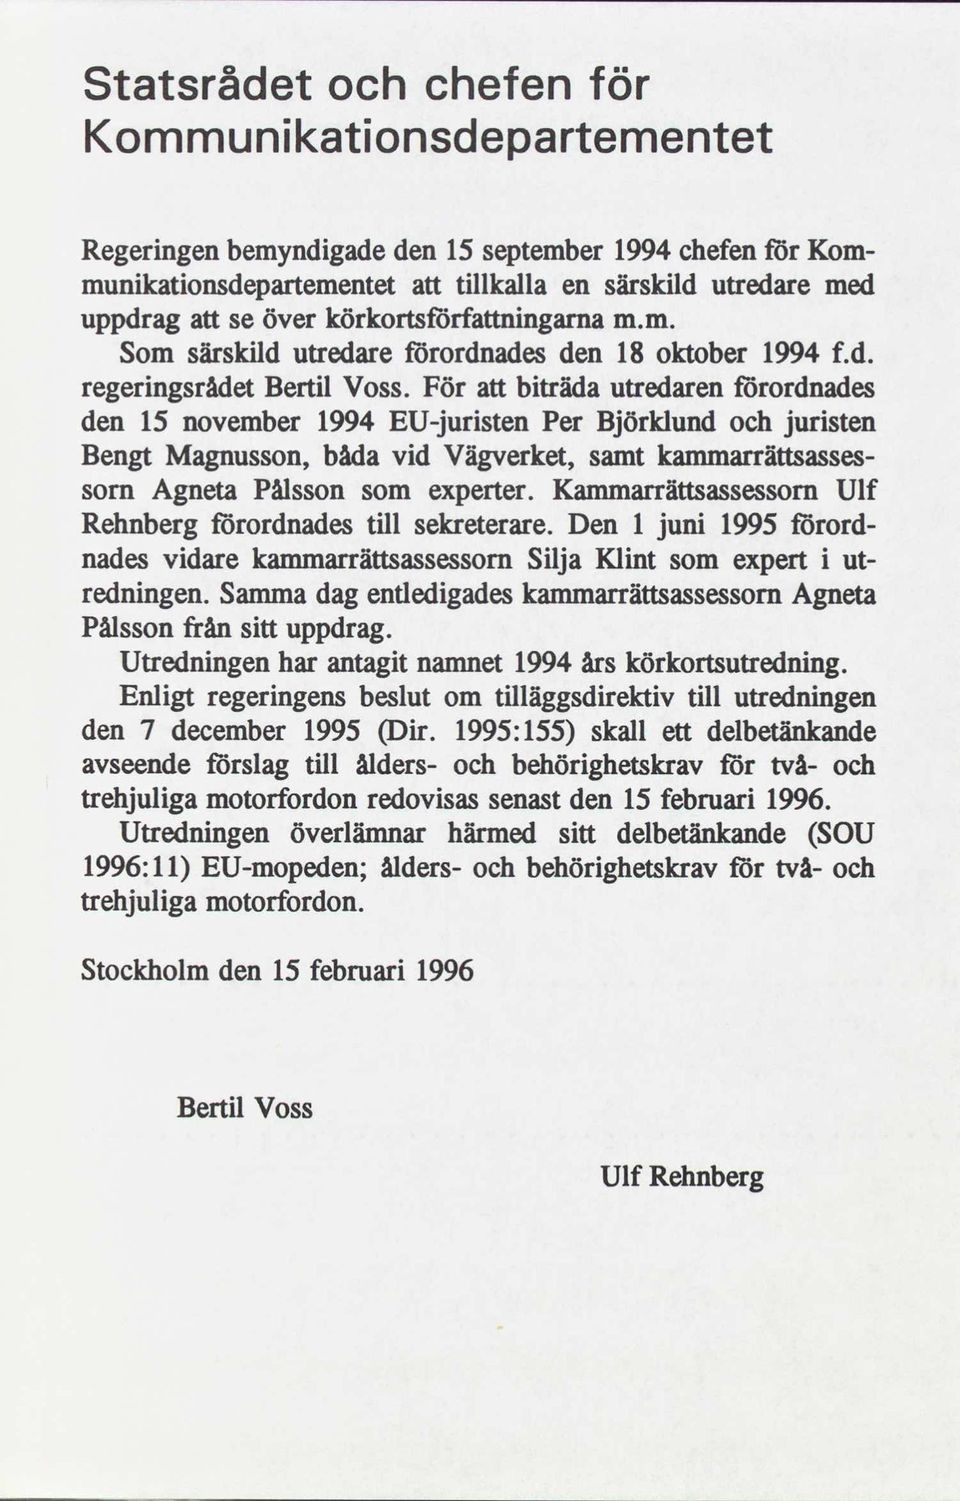 För att bträda utredaren förordnades den 15 november 1994 EU-jursten Per Björklund och jursten Bengt Magnusson, båda vd Vägverket, samt kammarrättsasses- sorn Agneta Pålsson som experter.